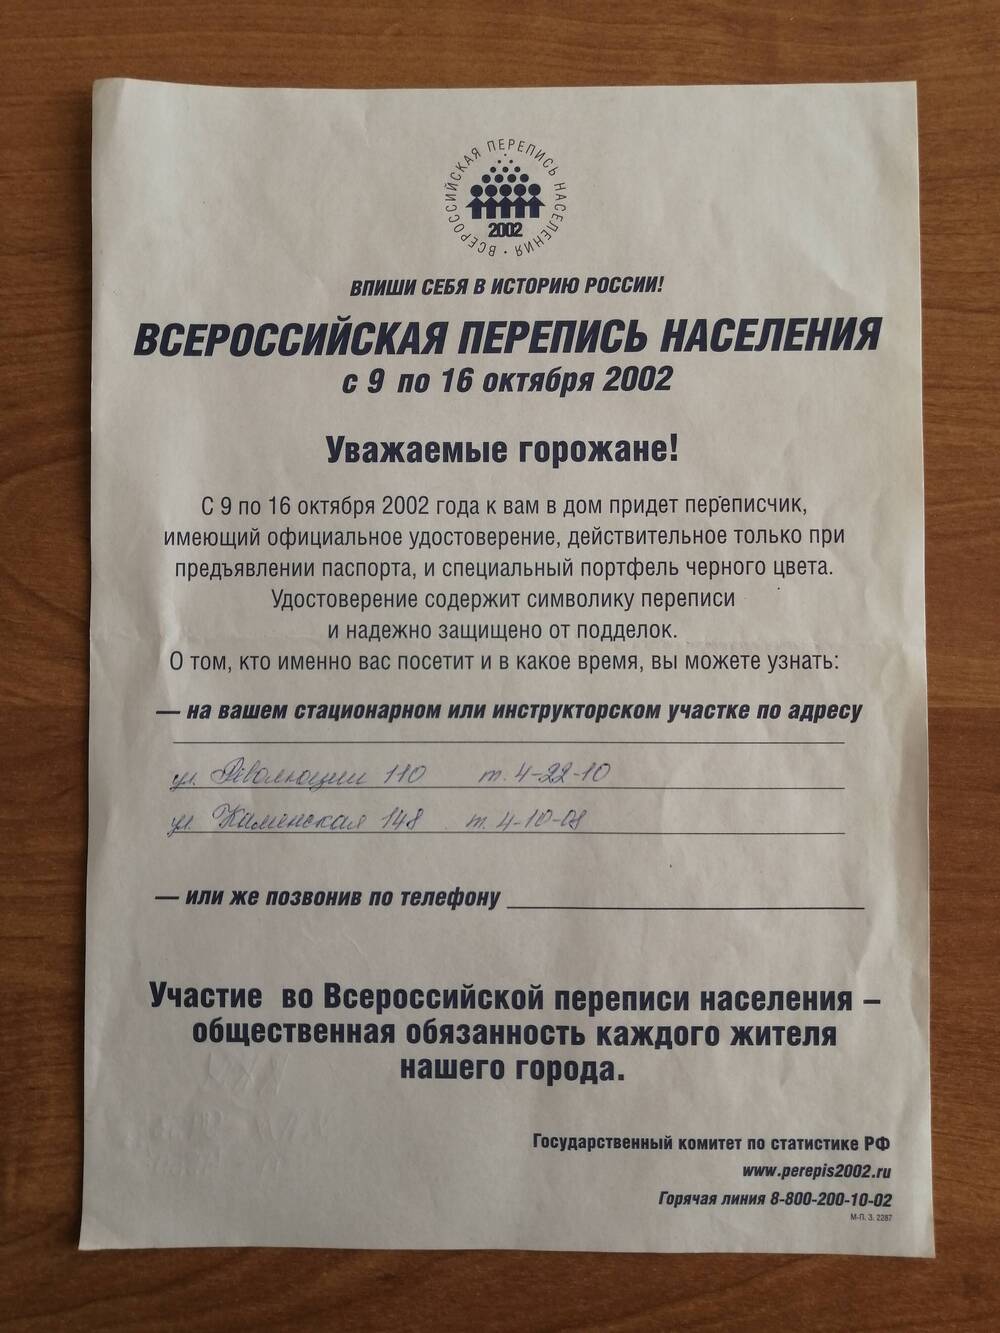 Листовка агитационная с призывом участвовать во Всероссийской переписи населения 2002 года.